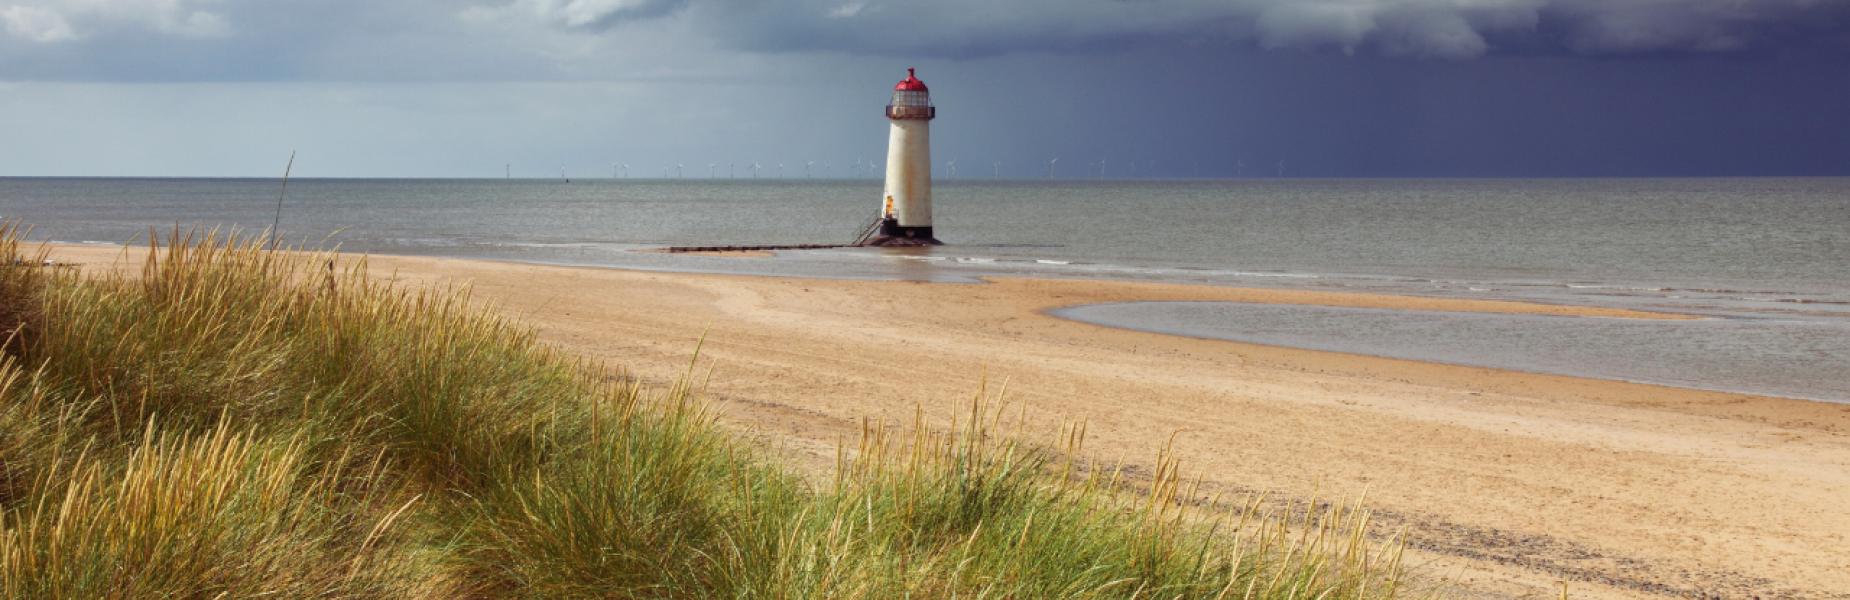 a beach and lighthouse